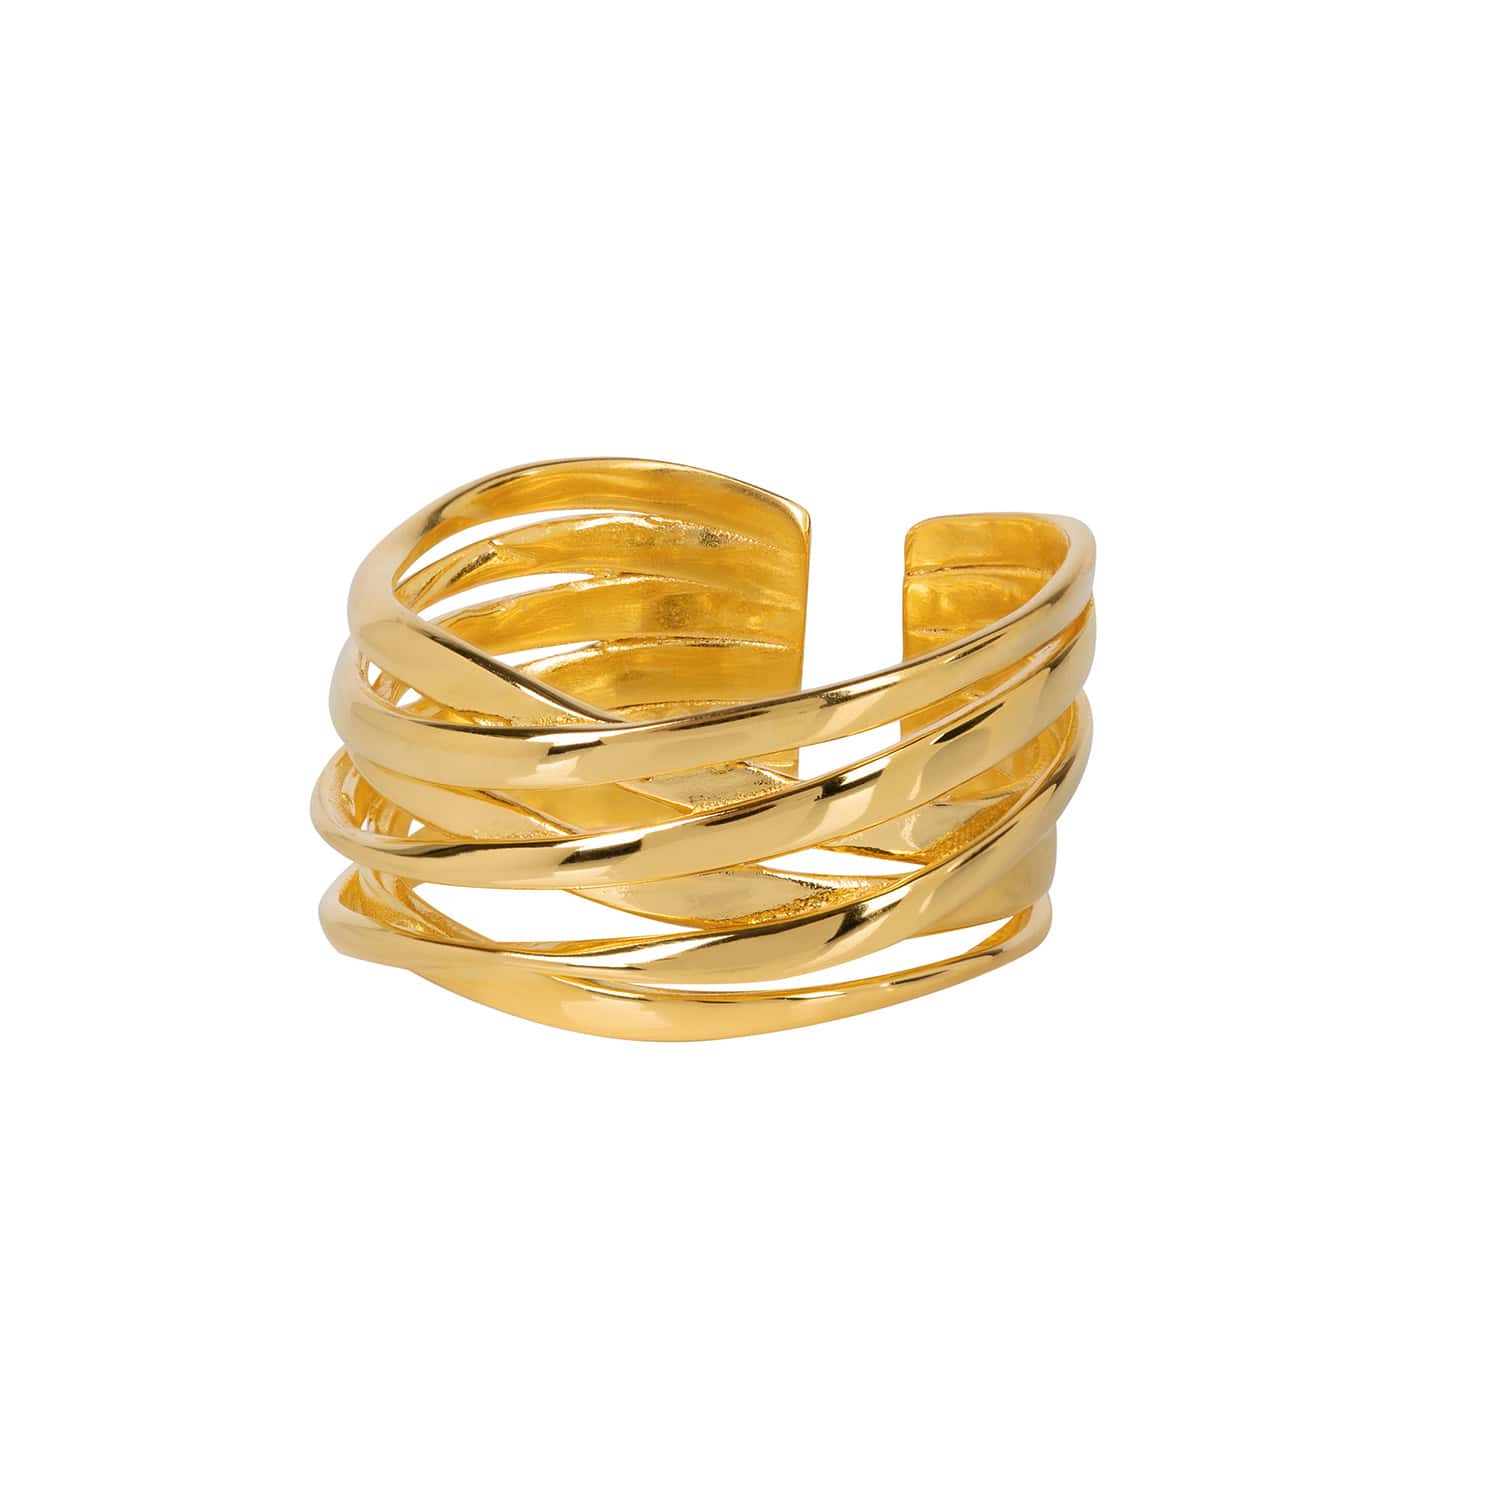 Amadeus Women's Genesis Gold Stacking Ring  - Size Adjustable